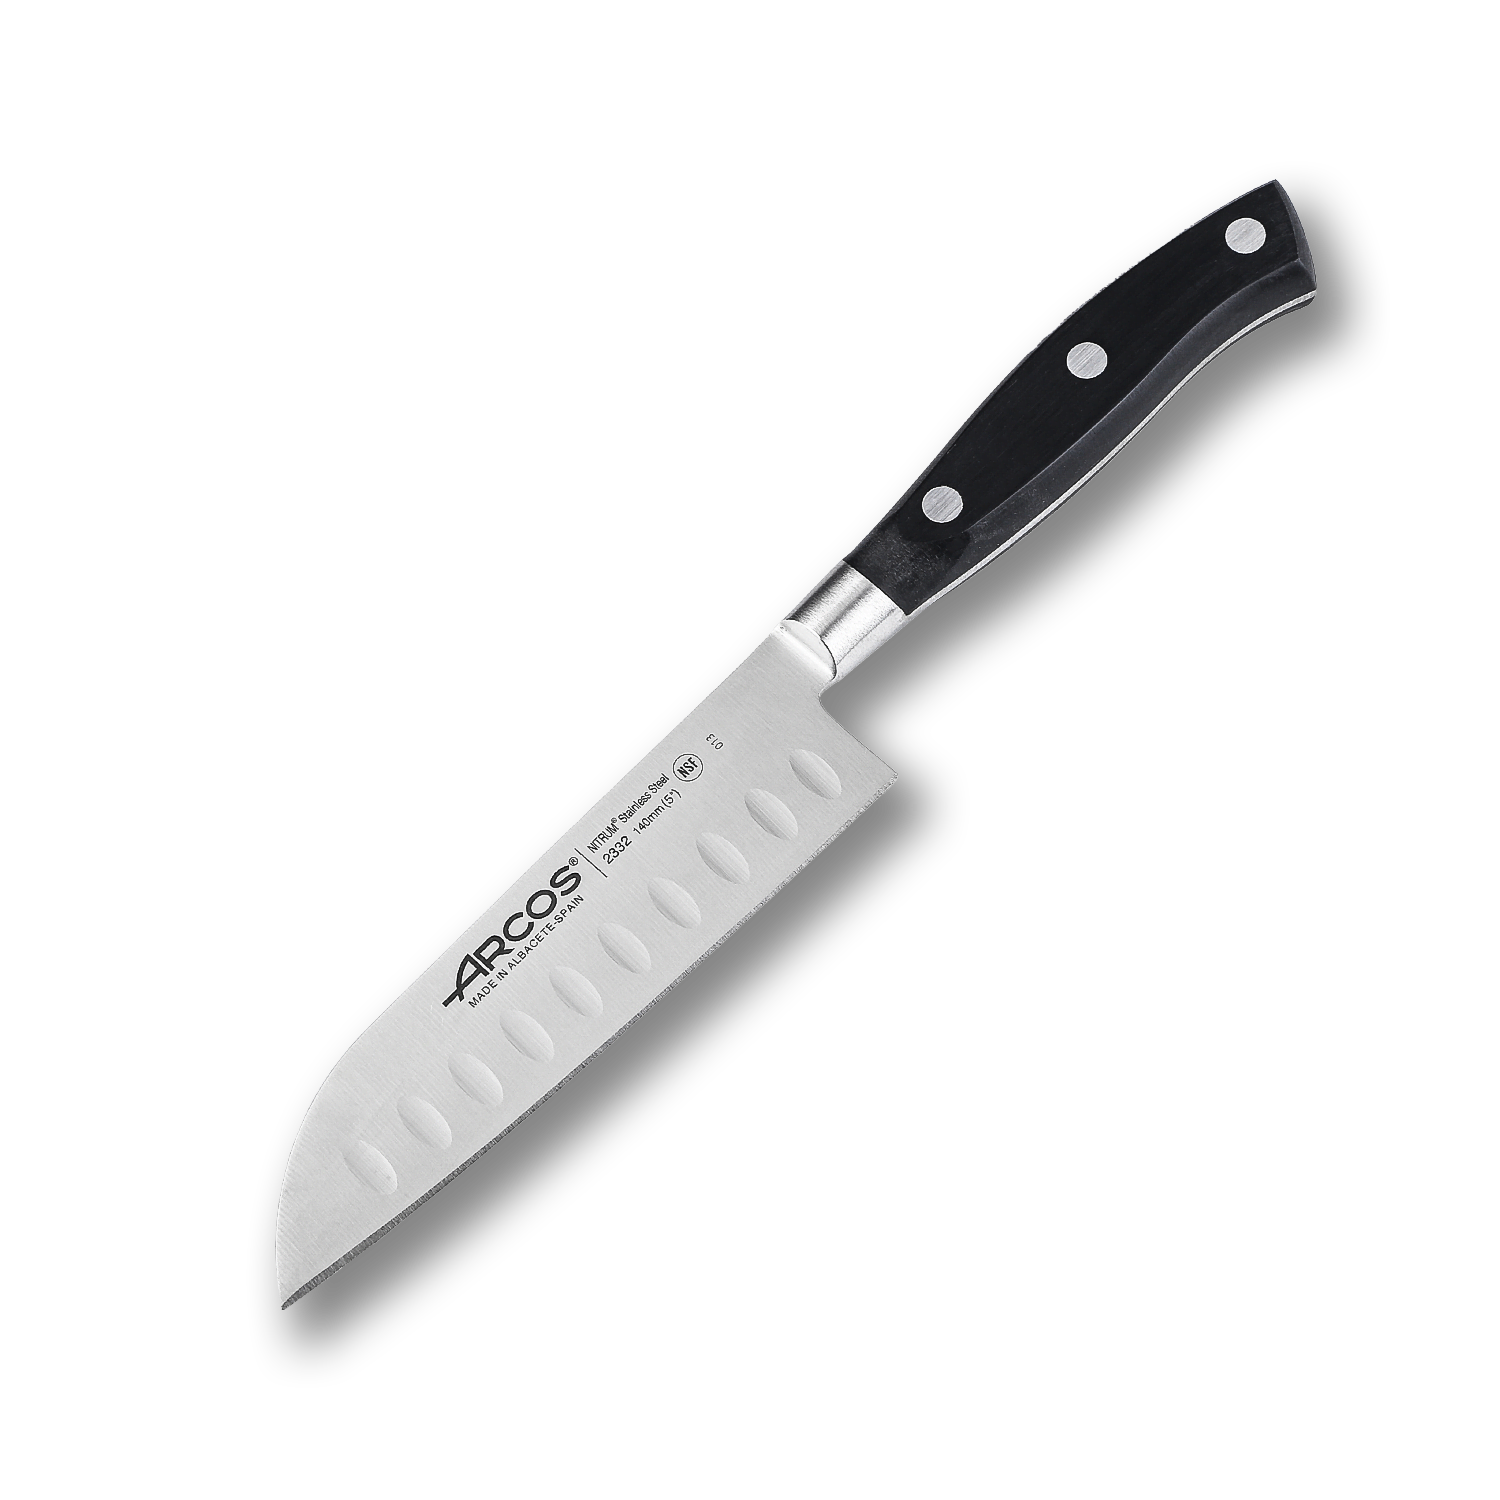 Поварской кухонный нож сантоку Arcos 14 см, кованая молибден-ванадиевая нержавеющая сталь X45CrMoV15, 233200